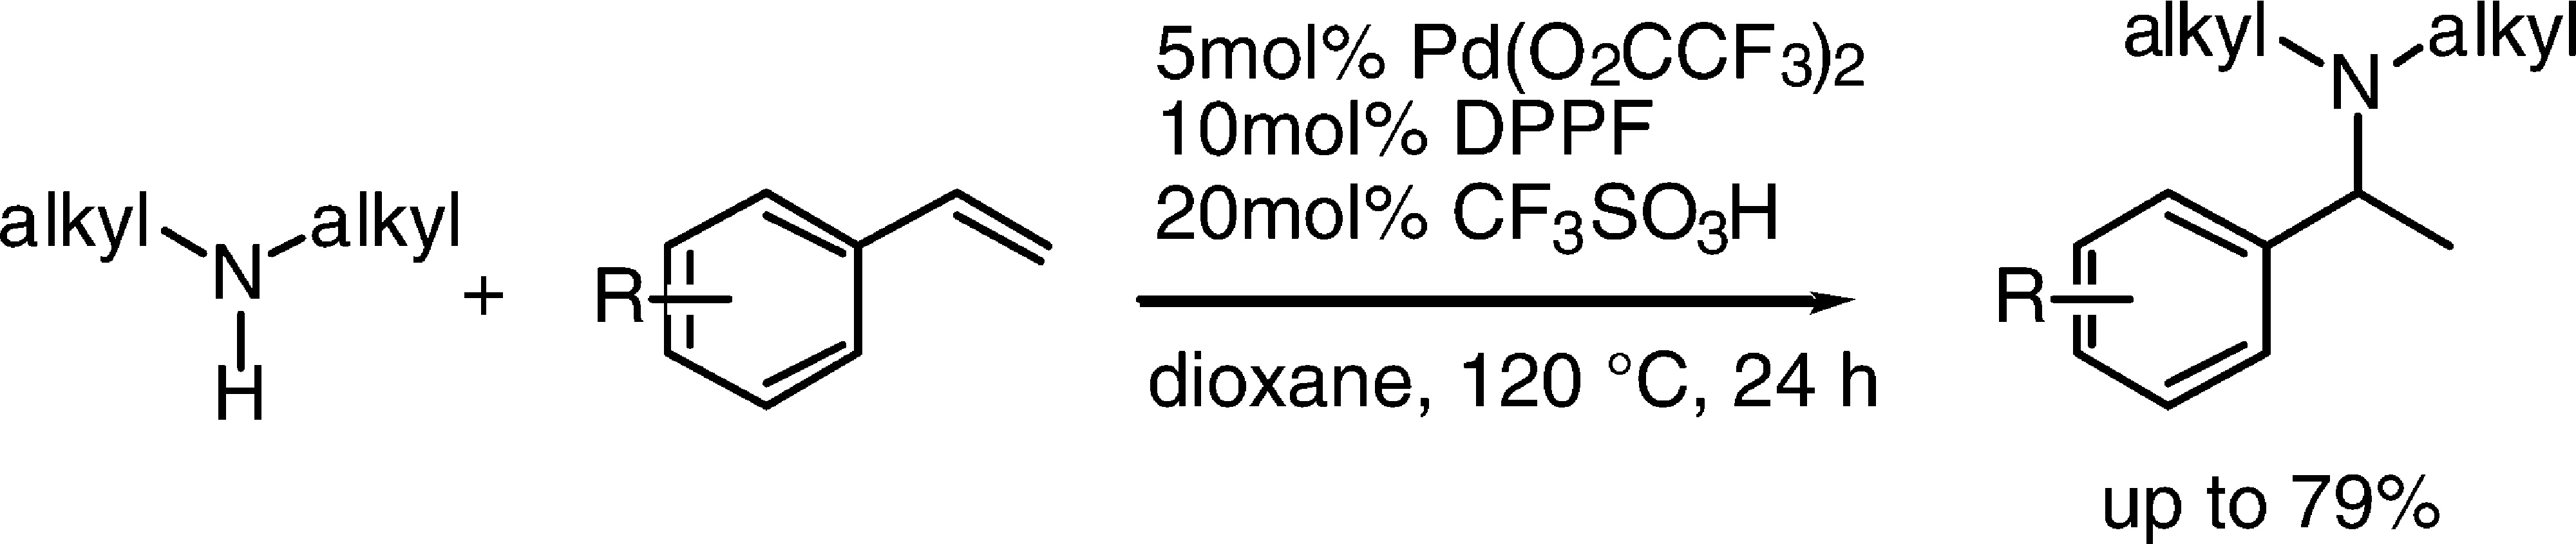 Intermolecular, Markovnikov Hydroamination of Vinylarenes with Alkylamines